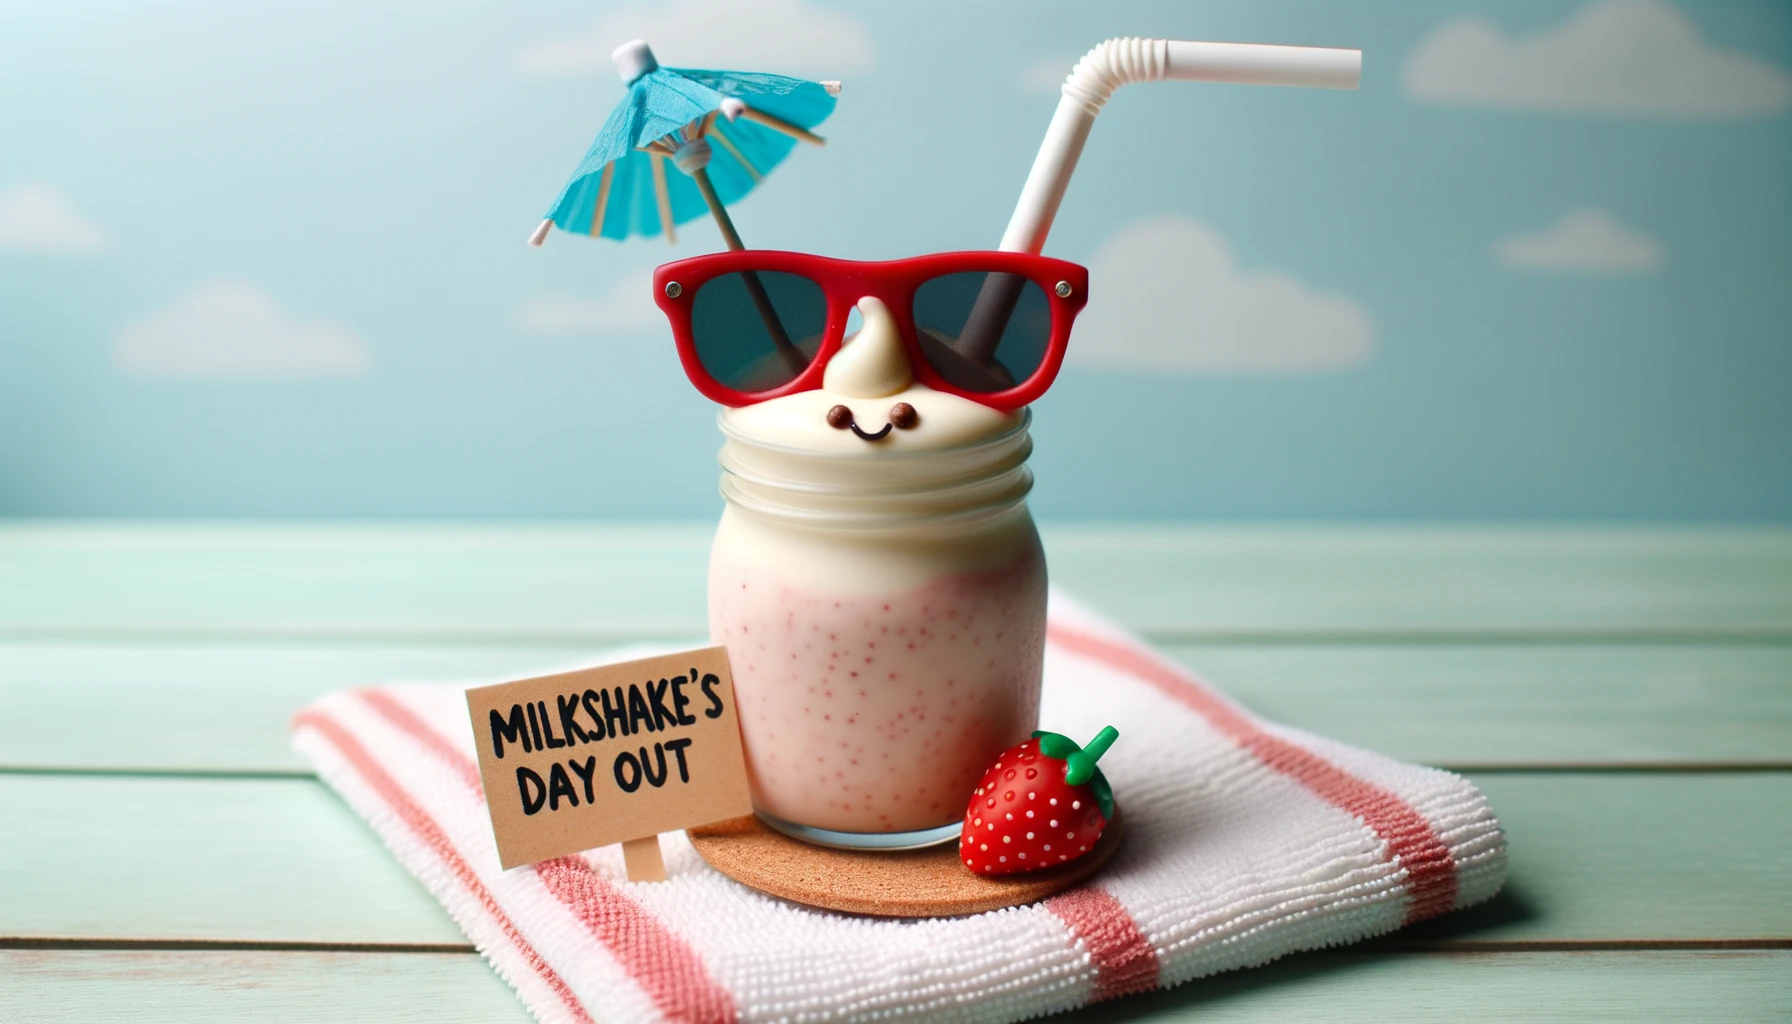 Milkshake's Day Out - Milkshake Pun